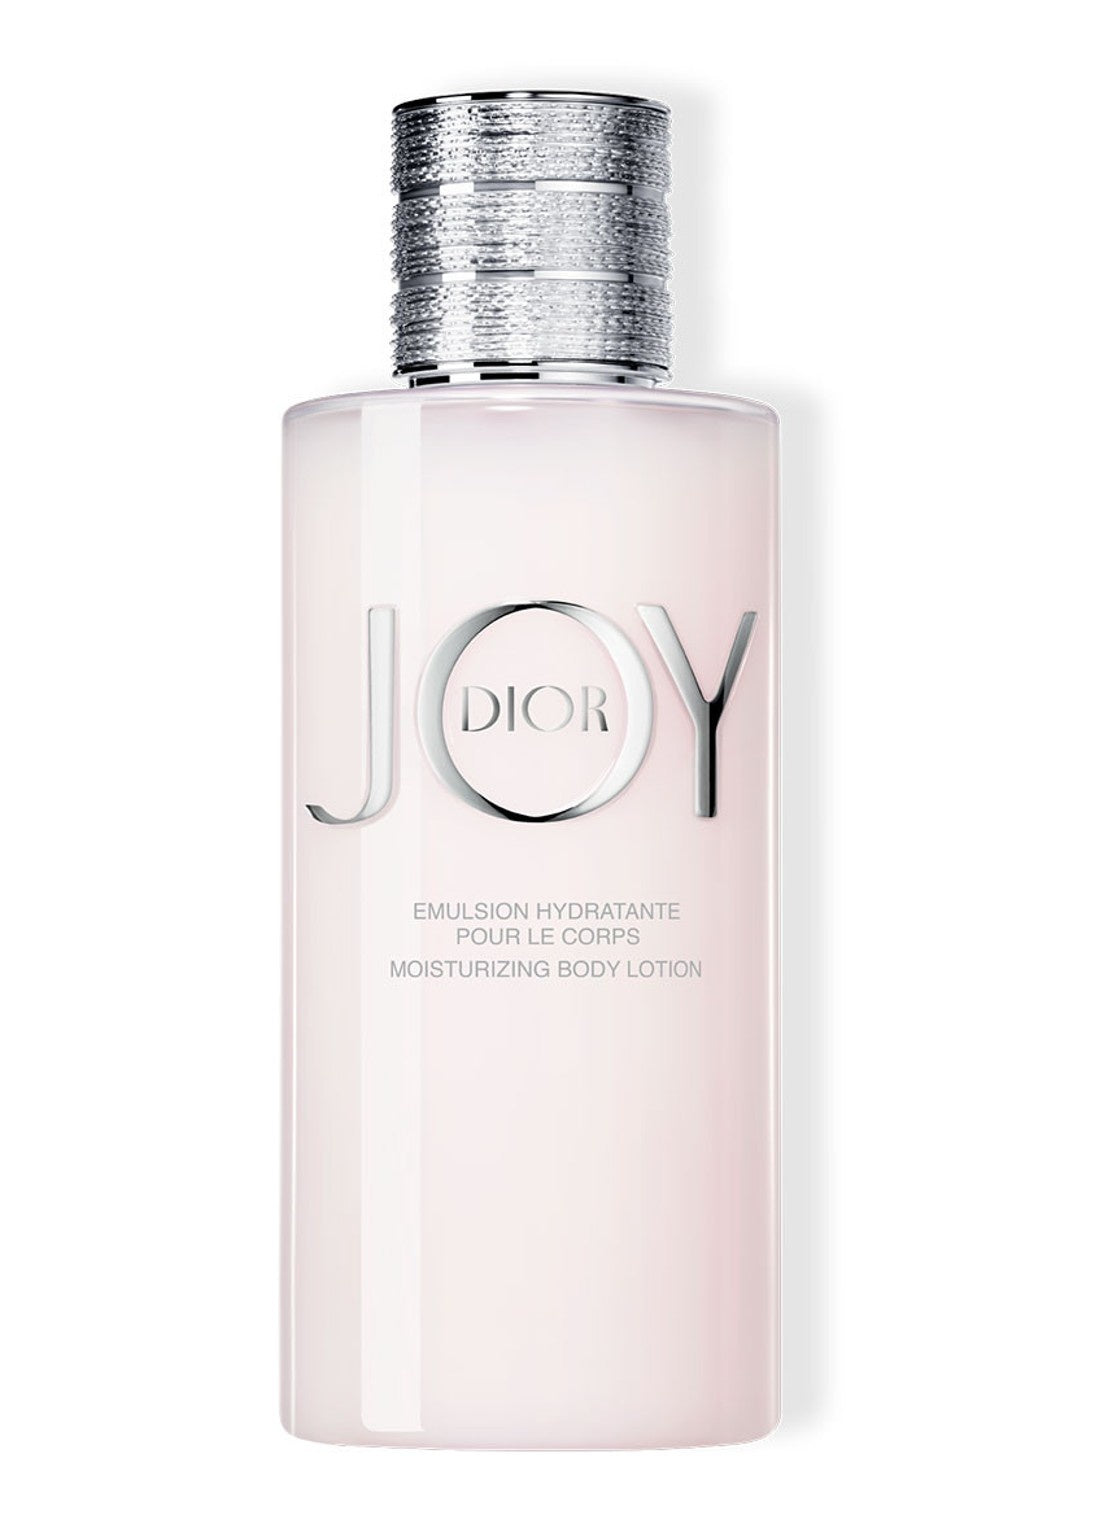 JOY by Dior Bodymilk